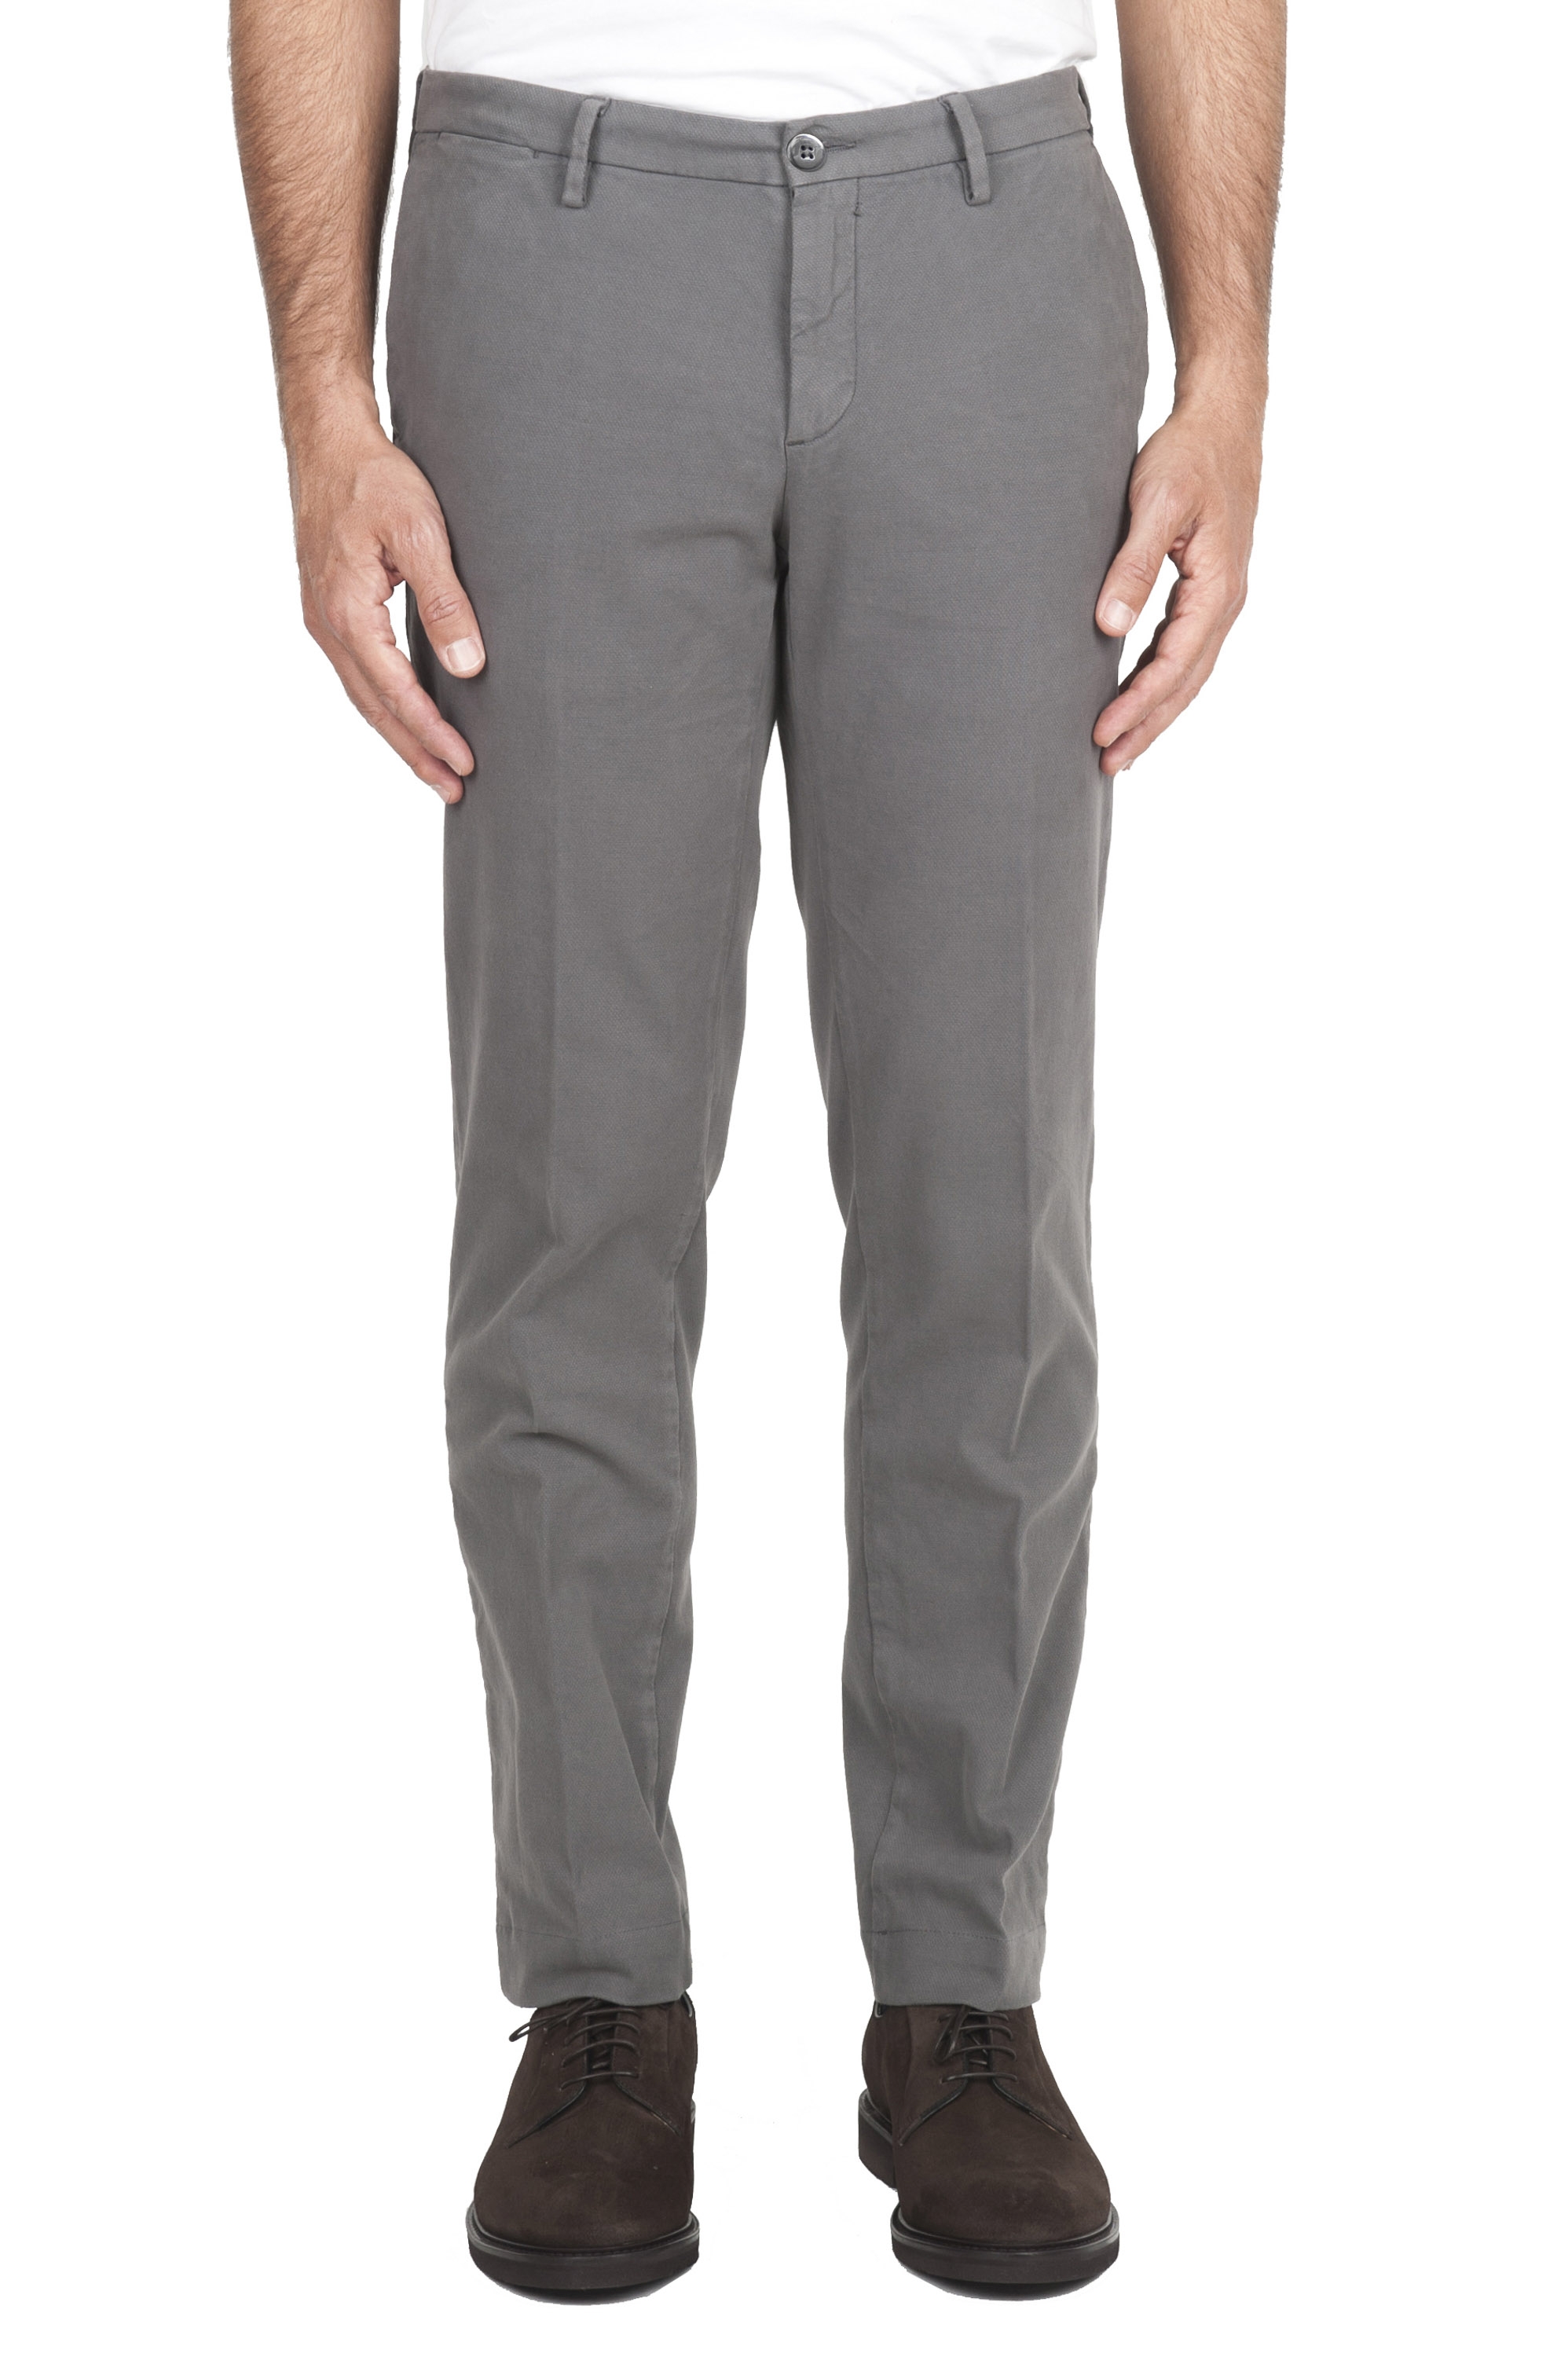 SBU 02927_2020AW Pantalones chinos clásicos en algodón elástico gris claro 01